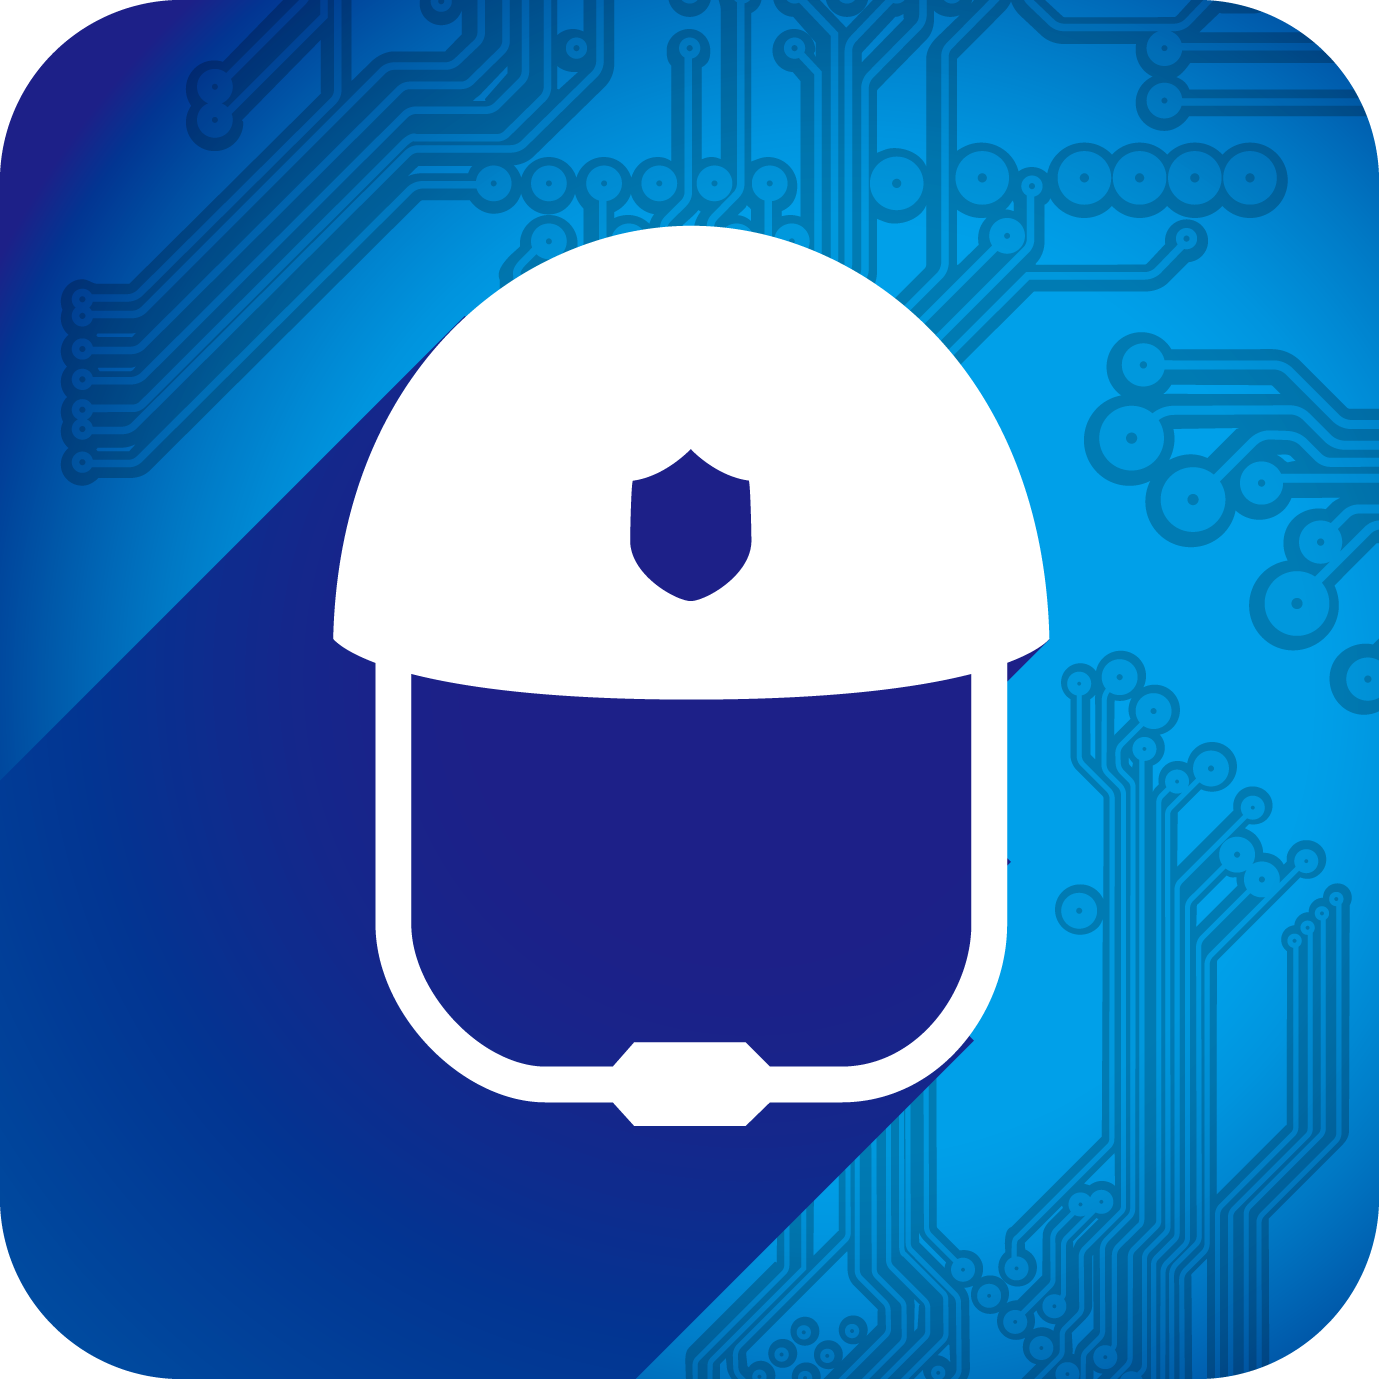 上海智慧保安app最新版